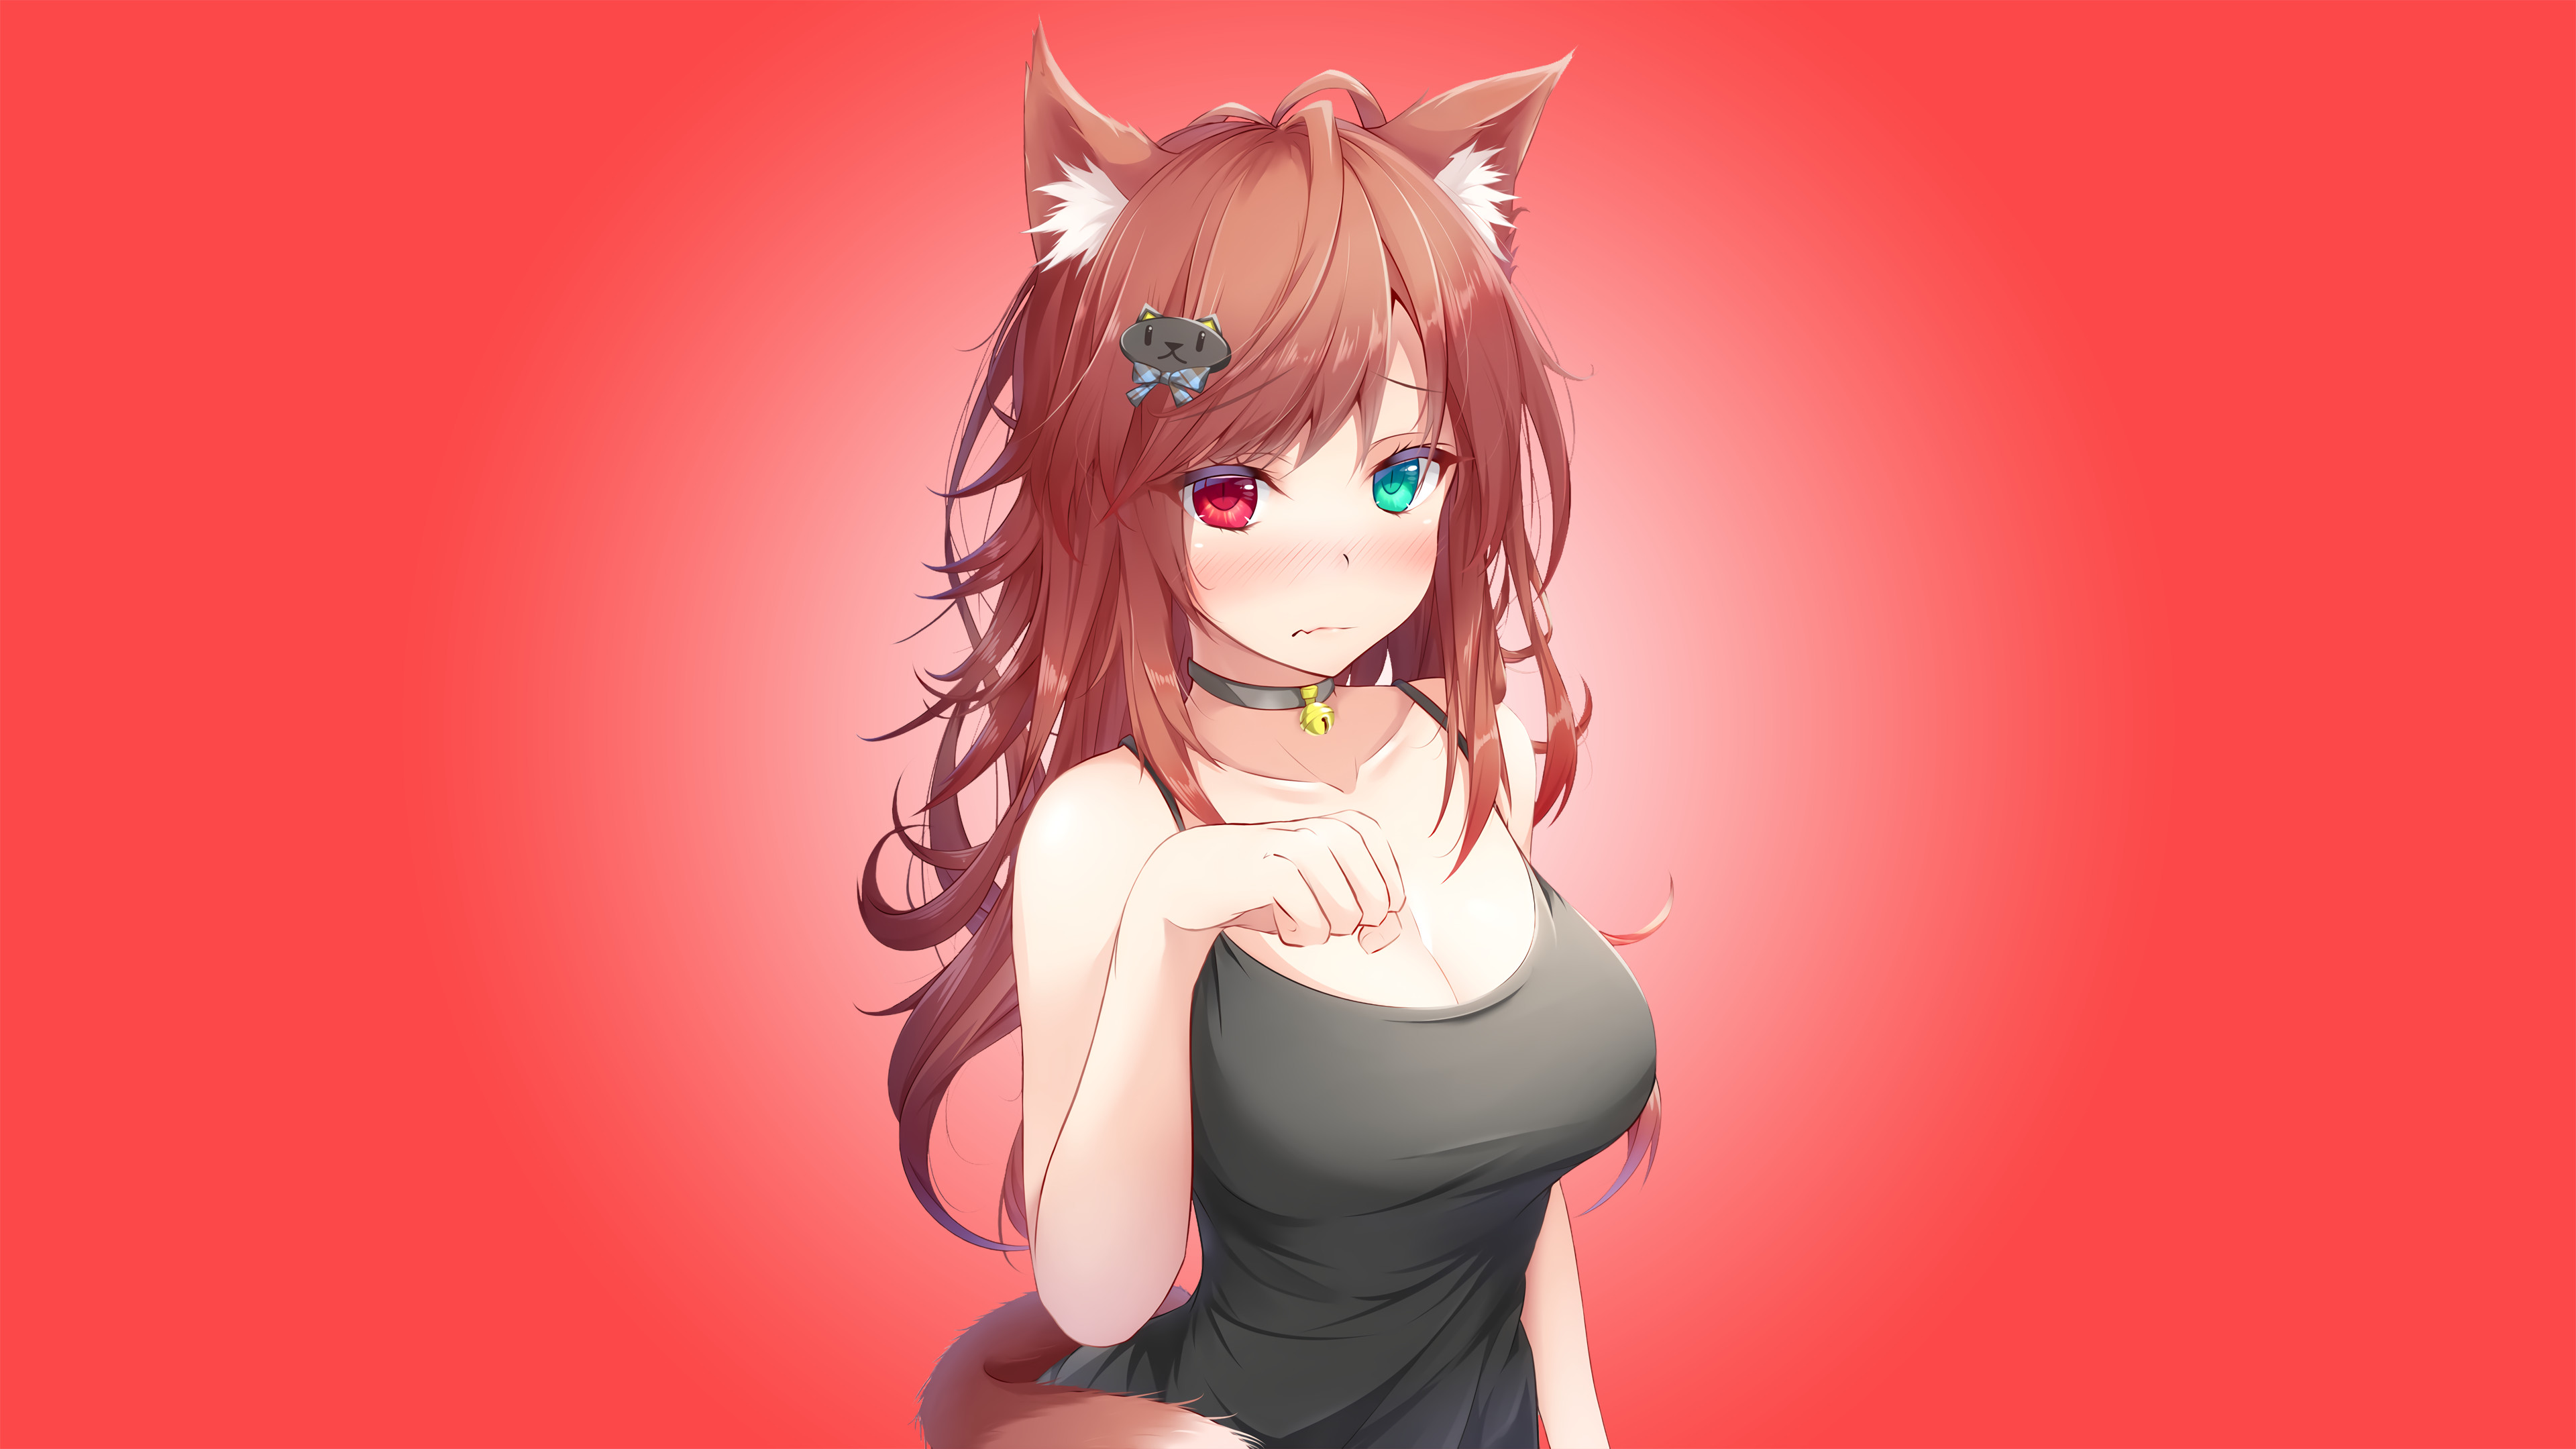 Anime Cat Girl Wallpaper Image